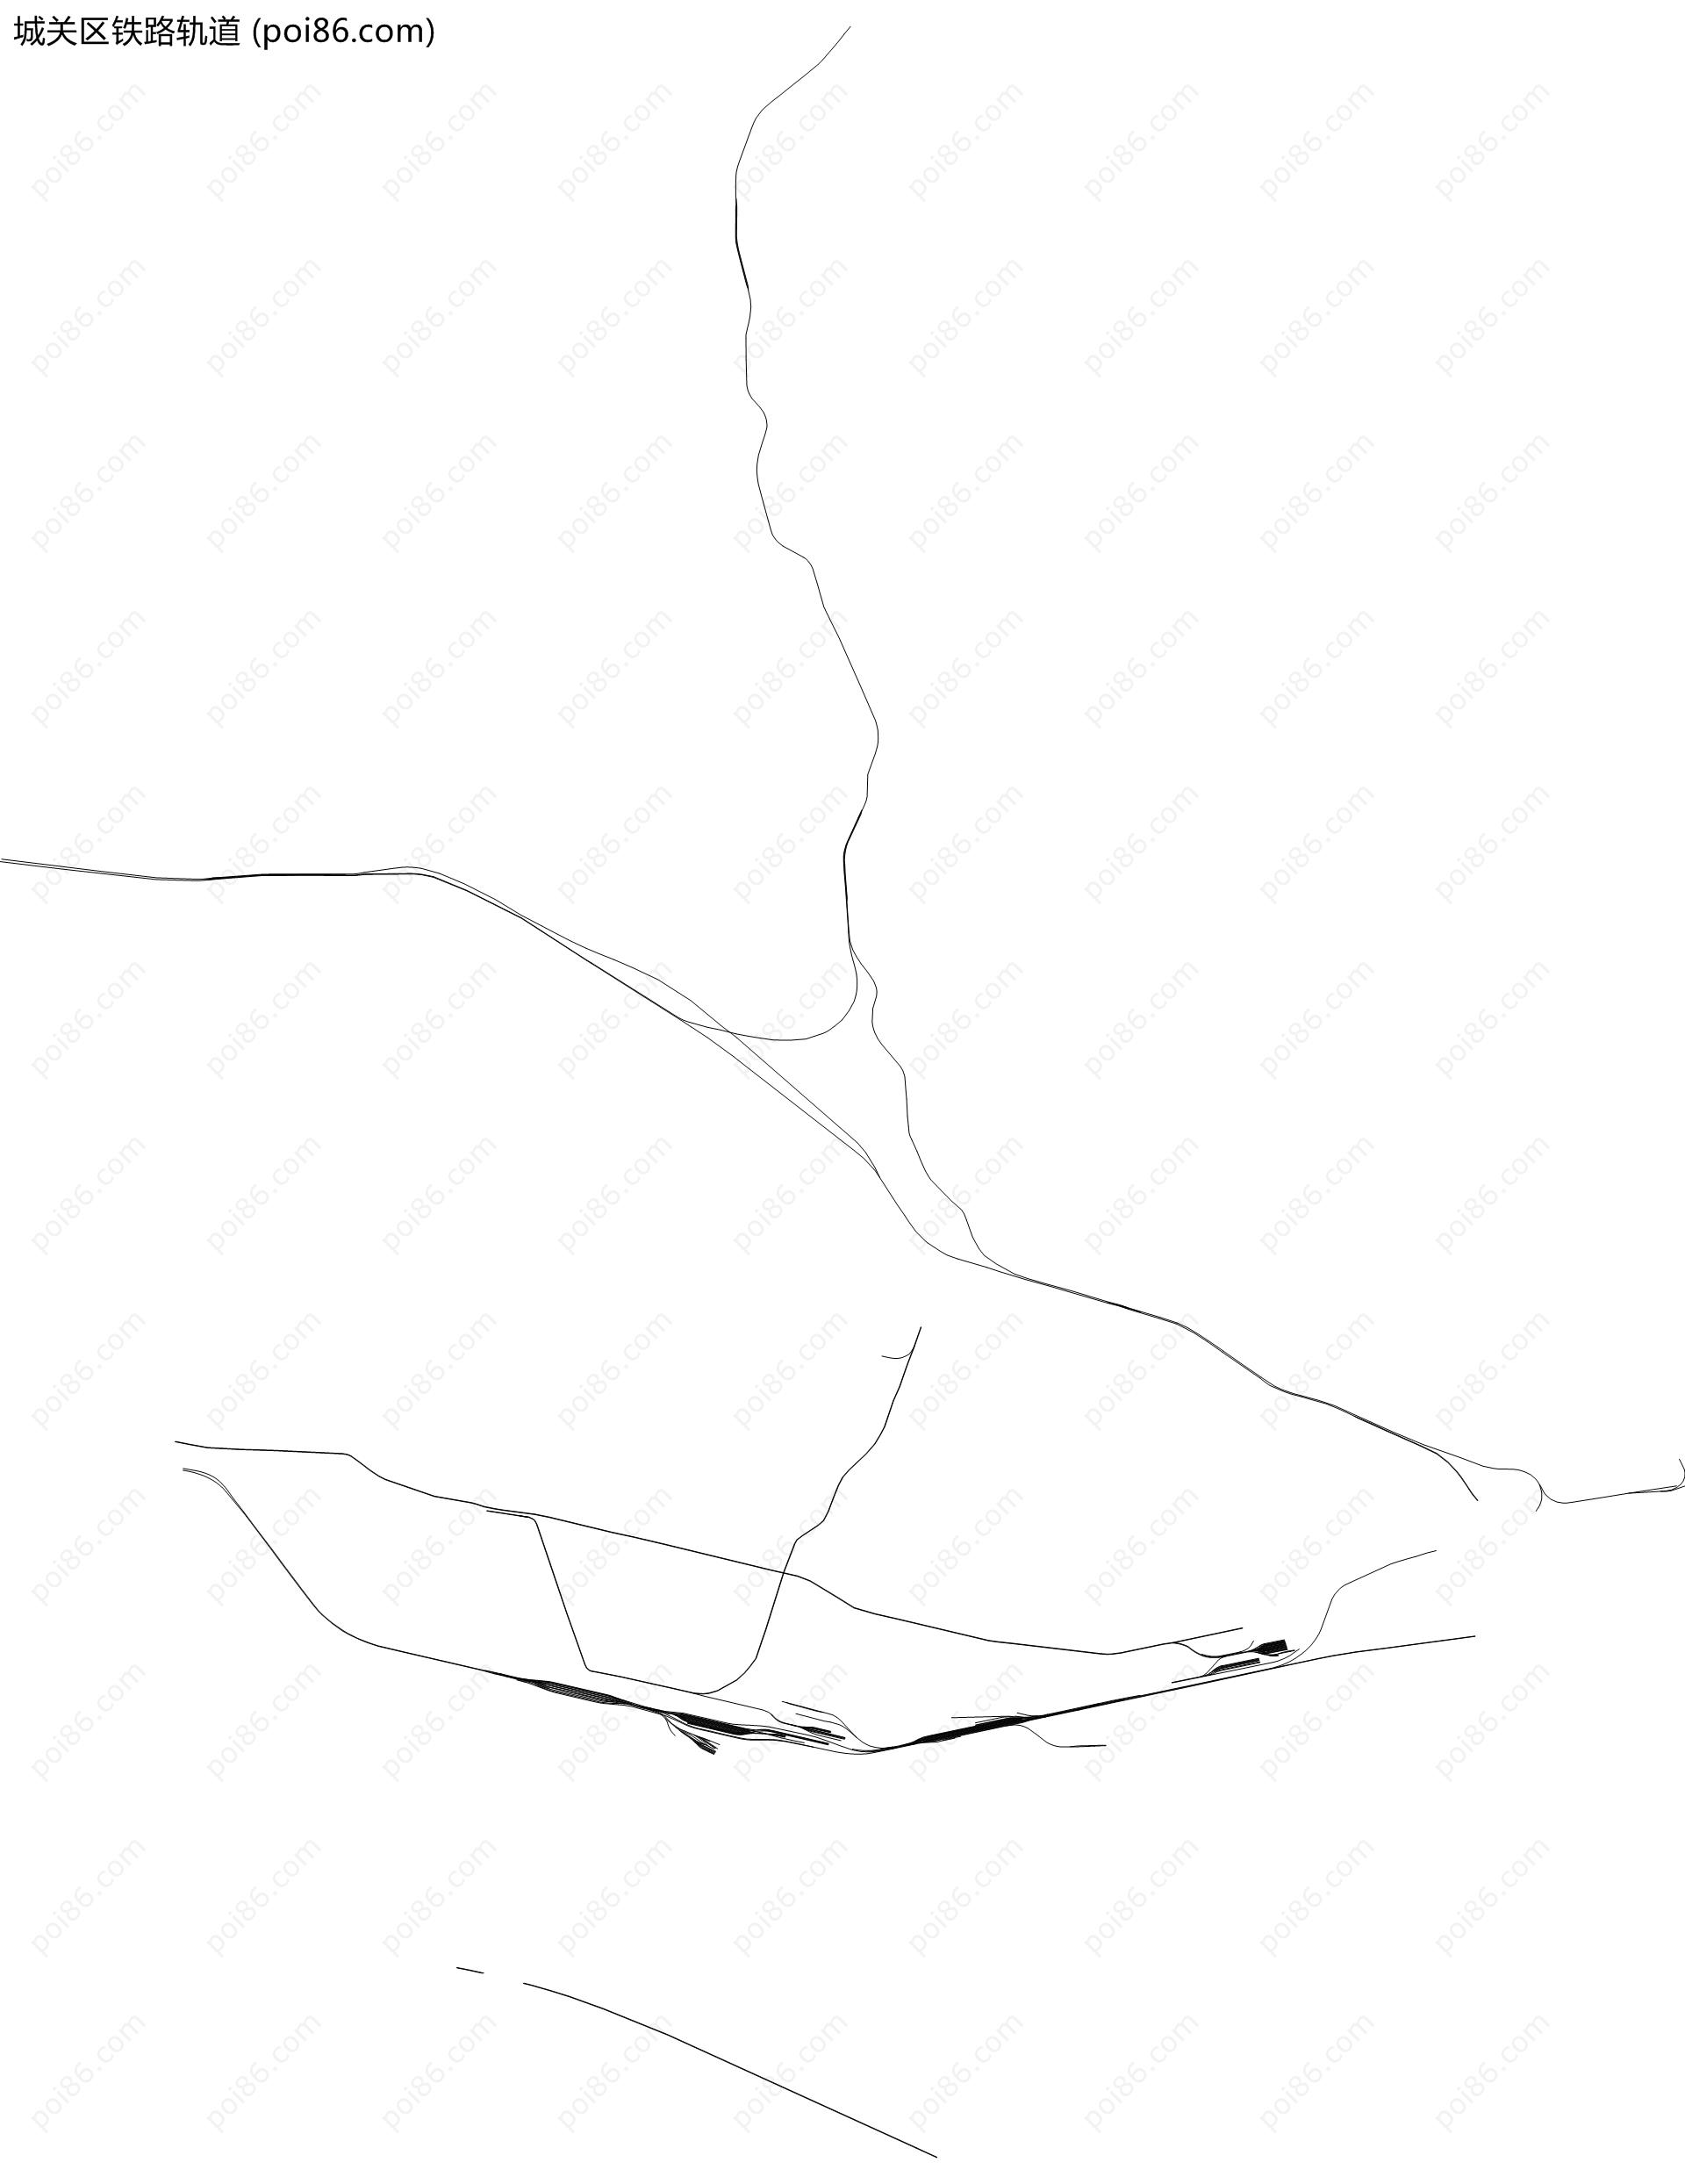 城关区铁路轨道地图